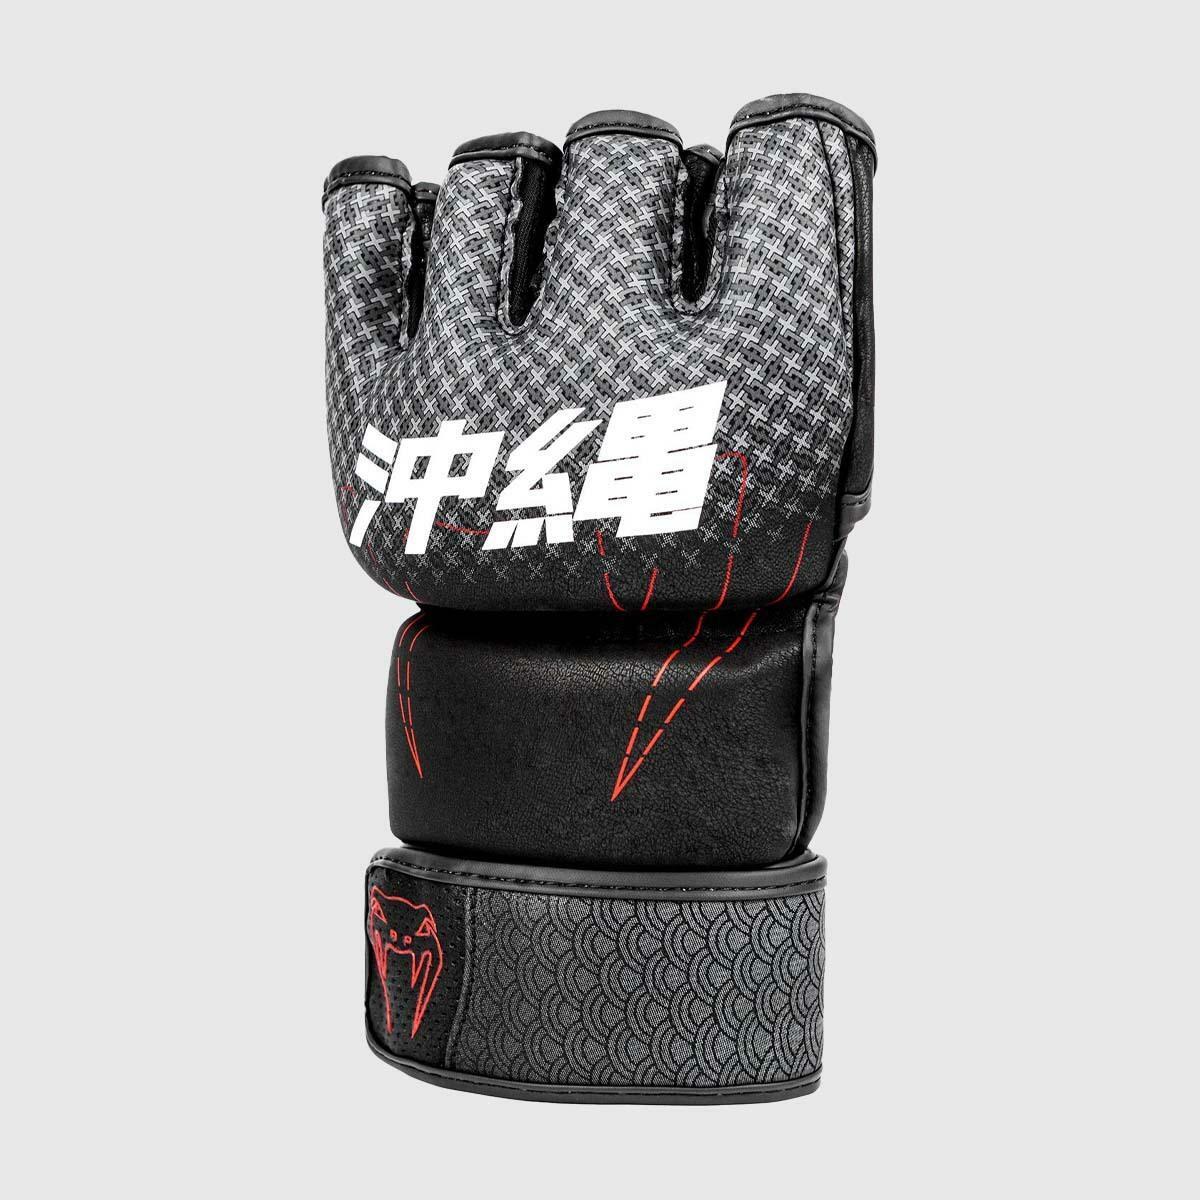 Venum Okinawa 3.0 MMA Gloves VEN-04531-100